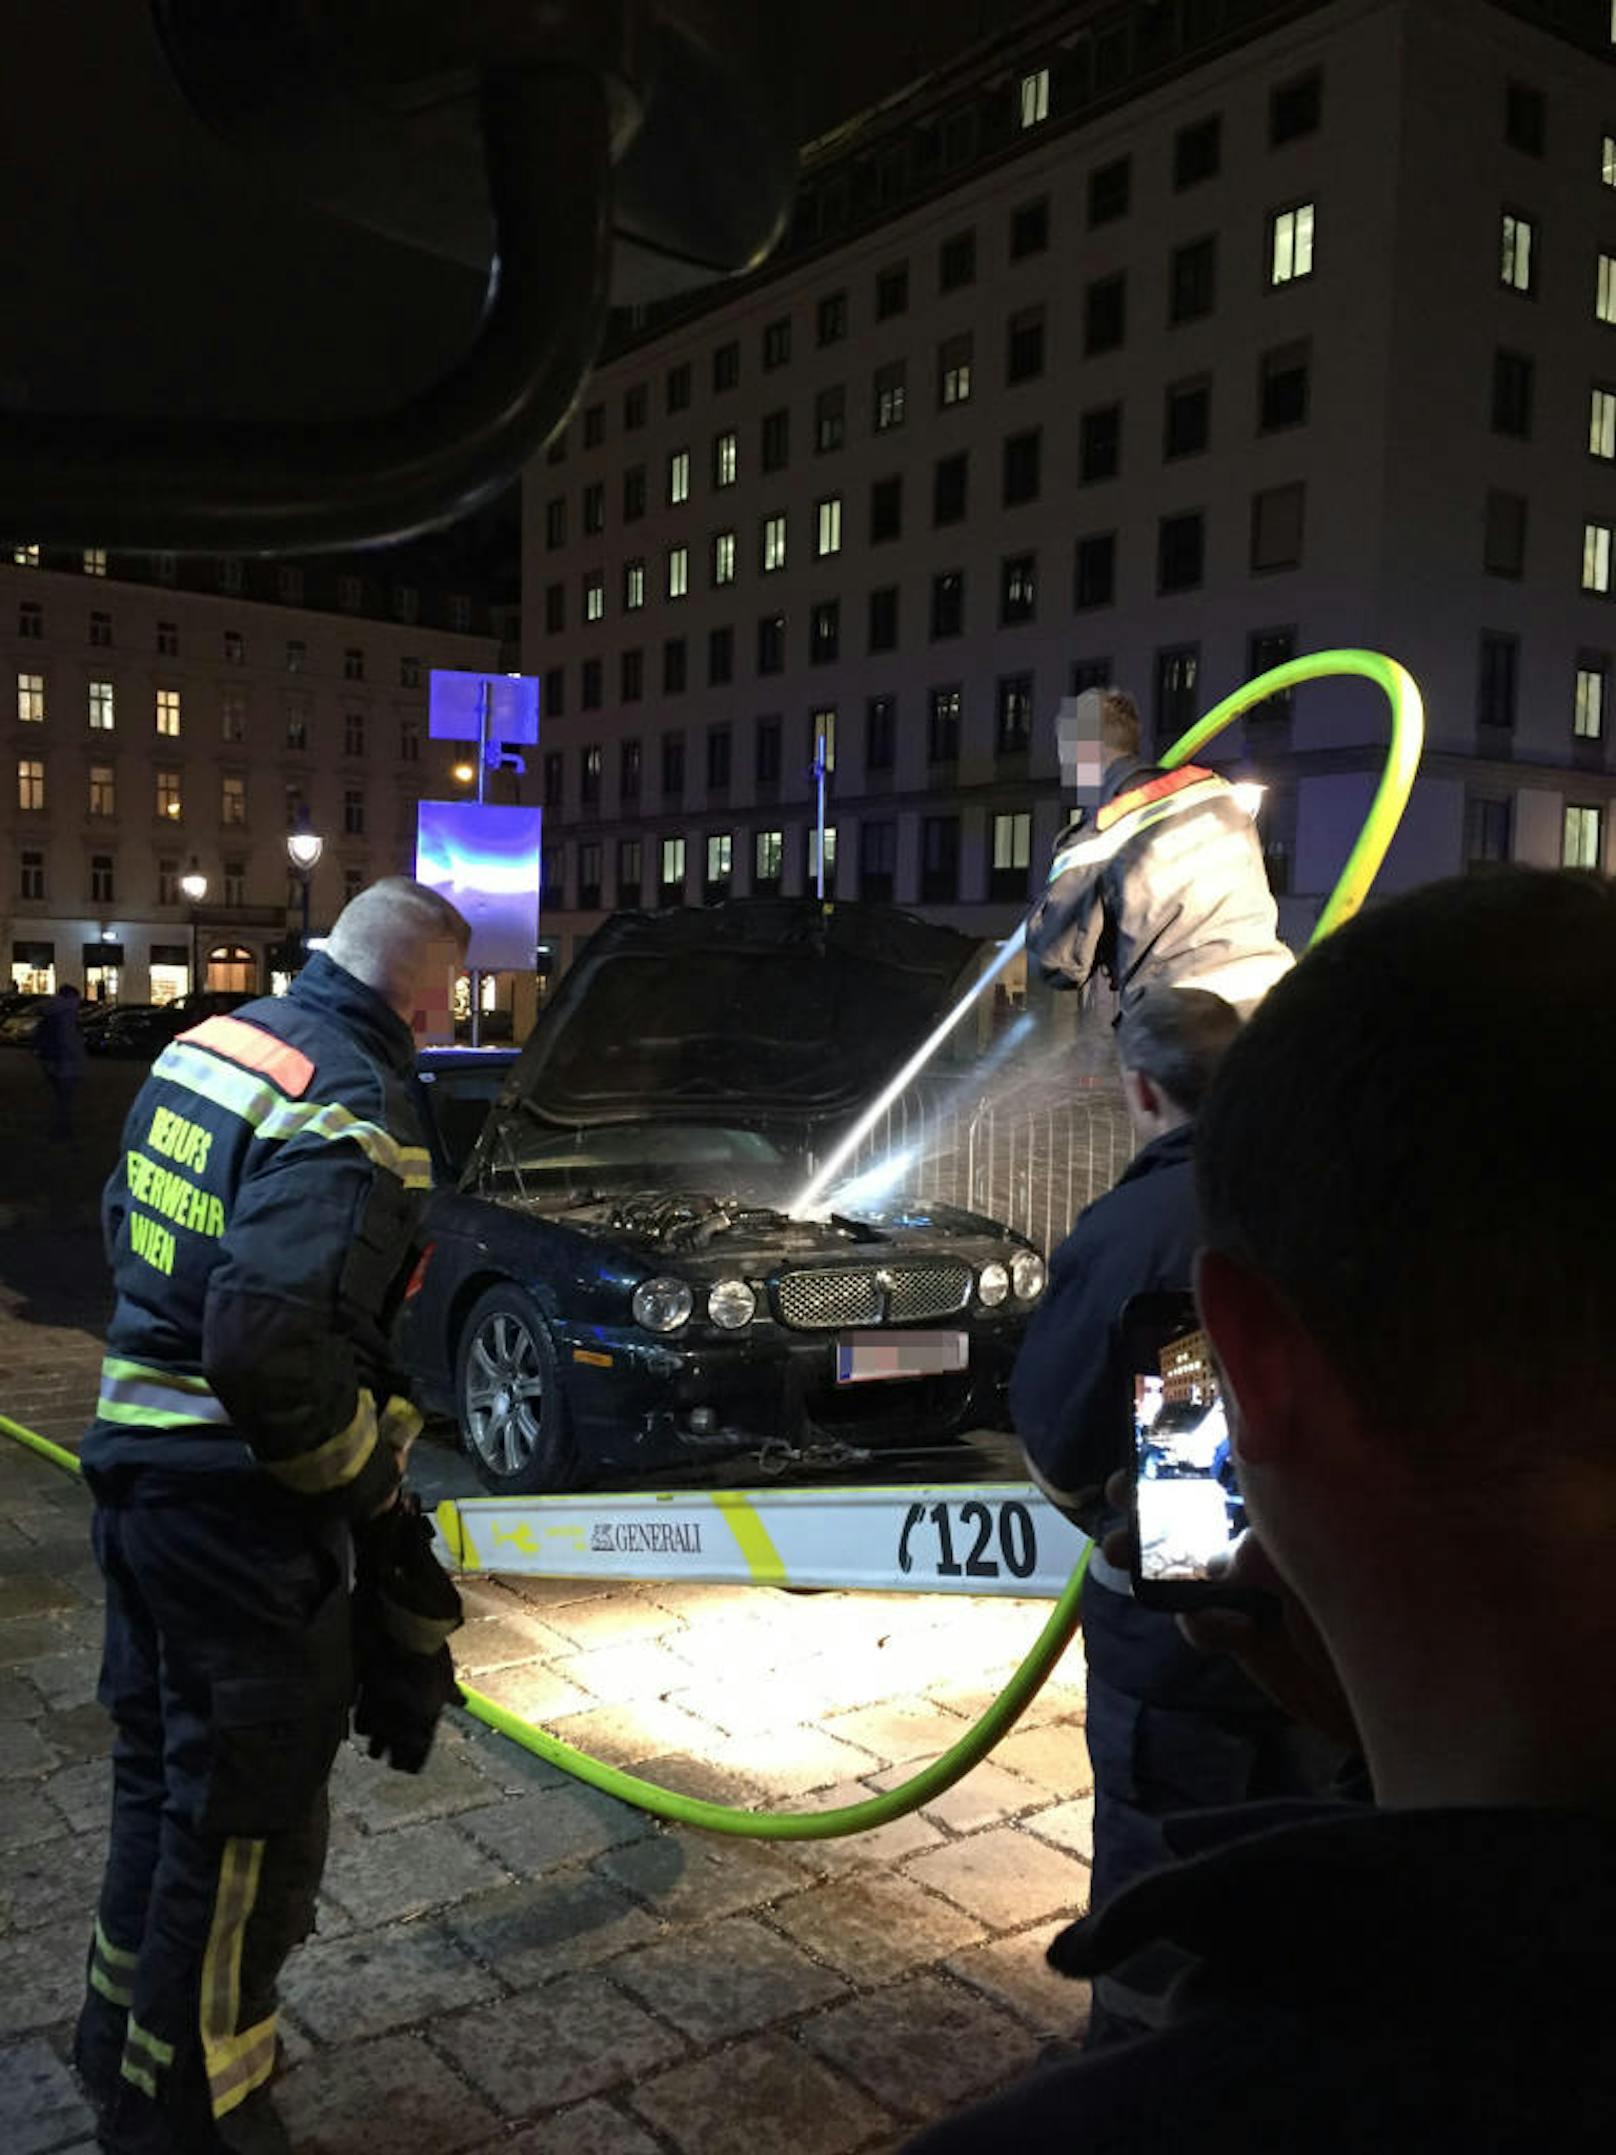 Am Dienstagnachmittag rückten Feuerwehr und ÖAMTC gegen 16.45 Uhr zu einem Einsatz in die Wiener Innenstadt aus...